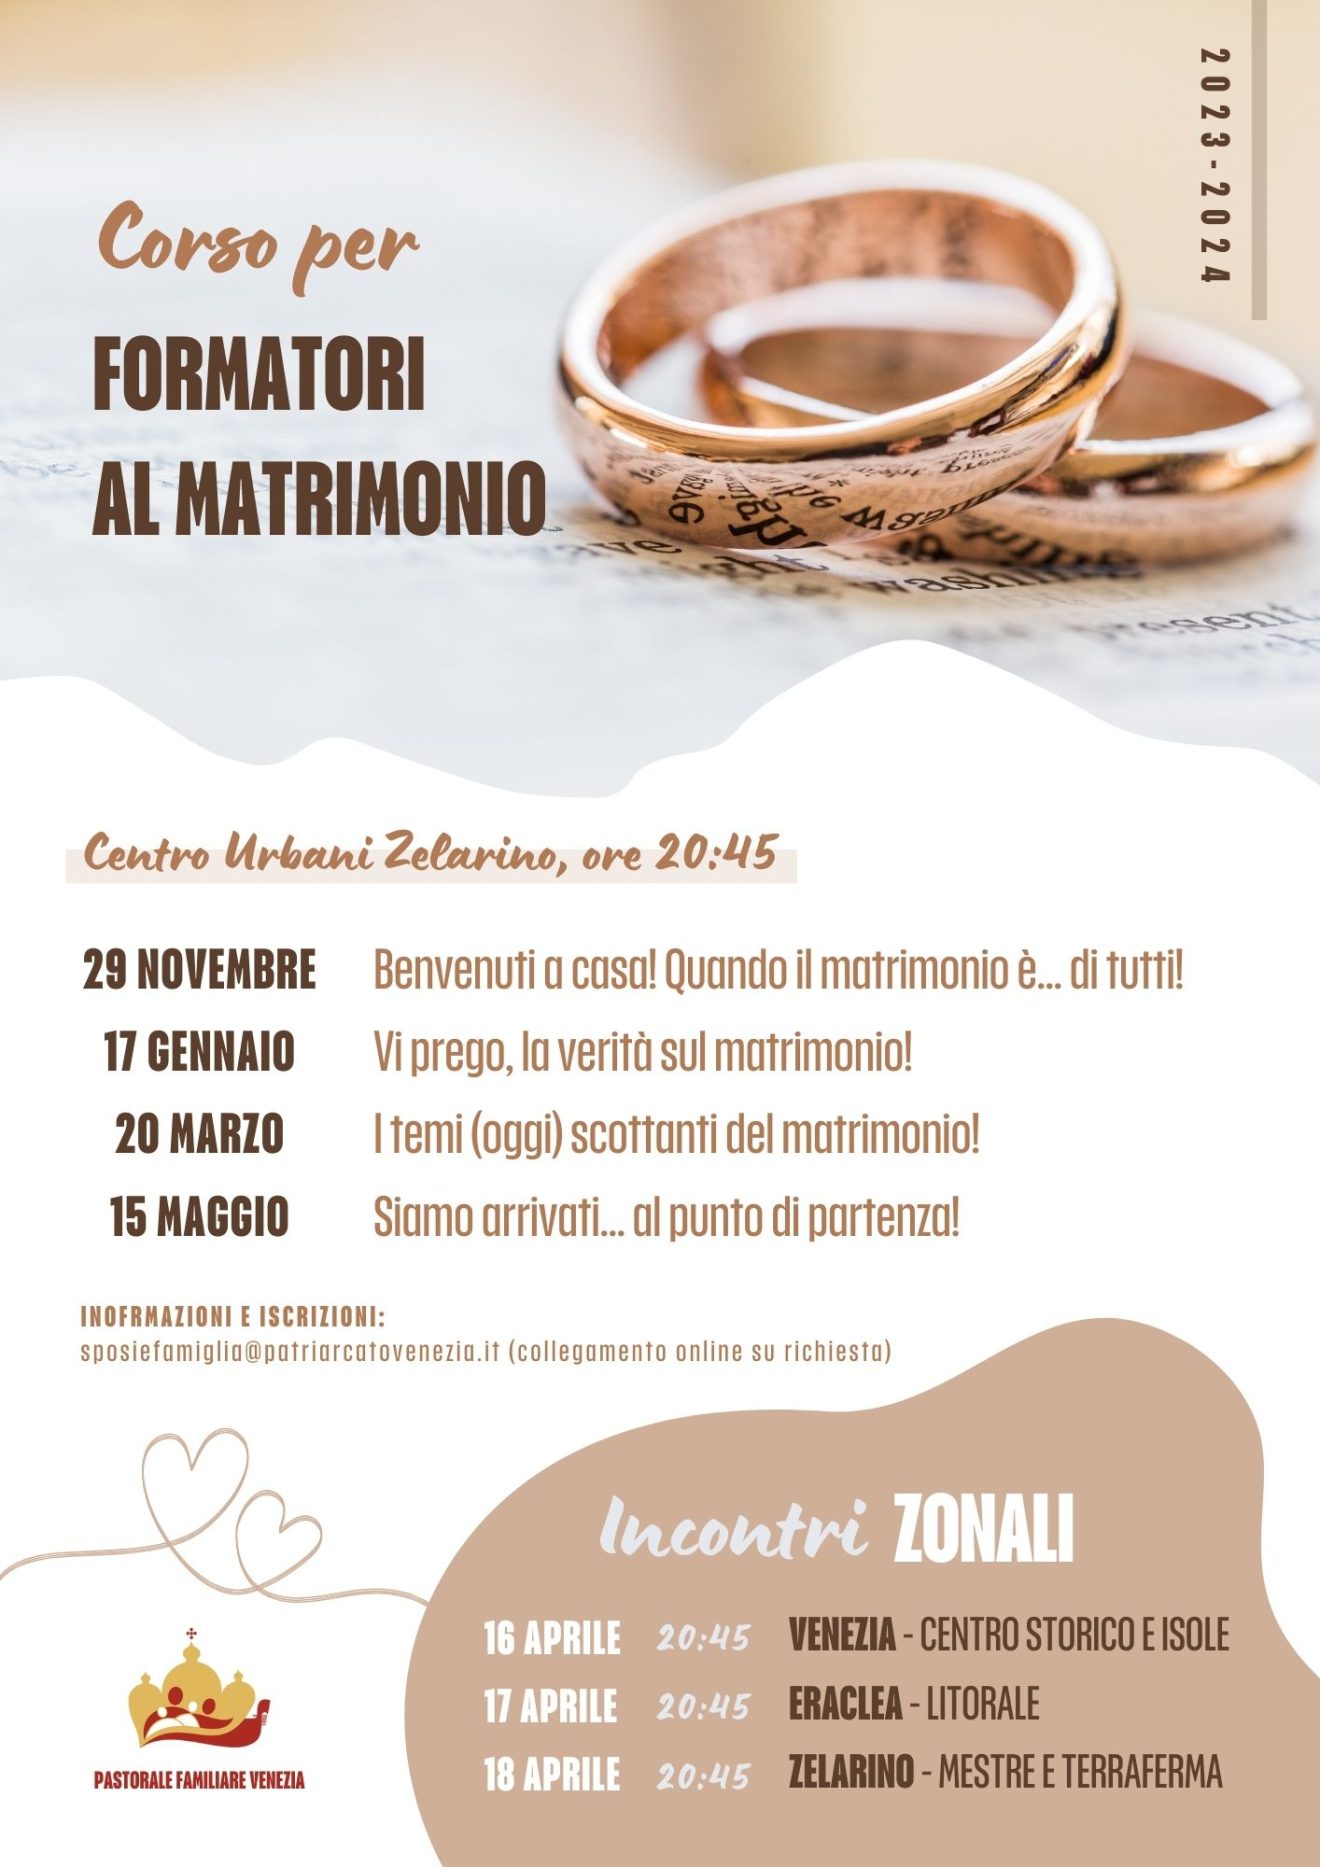 Corso_per_formatori_al_matrimonio_PF